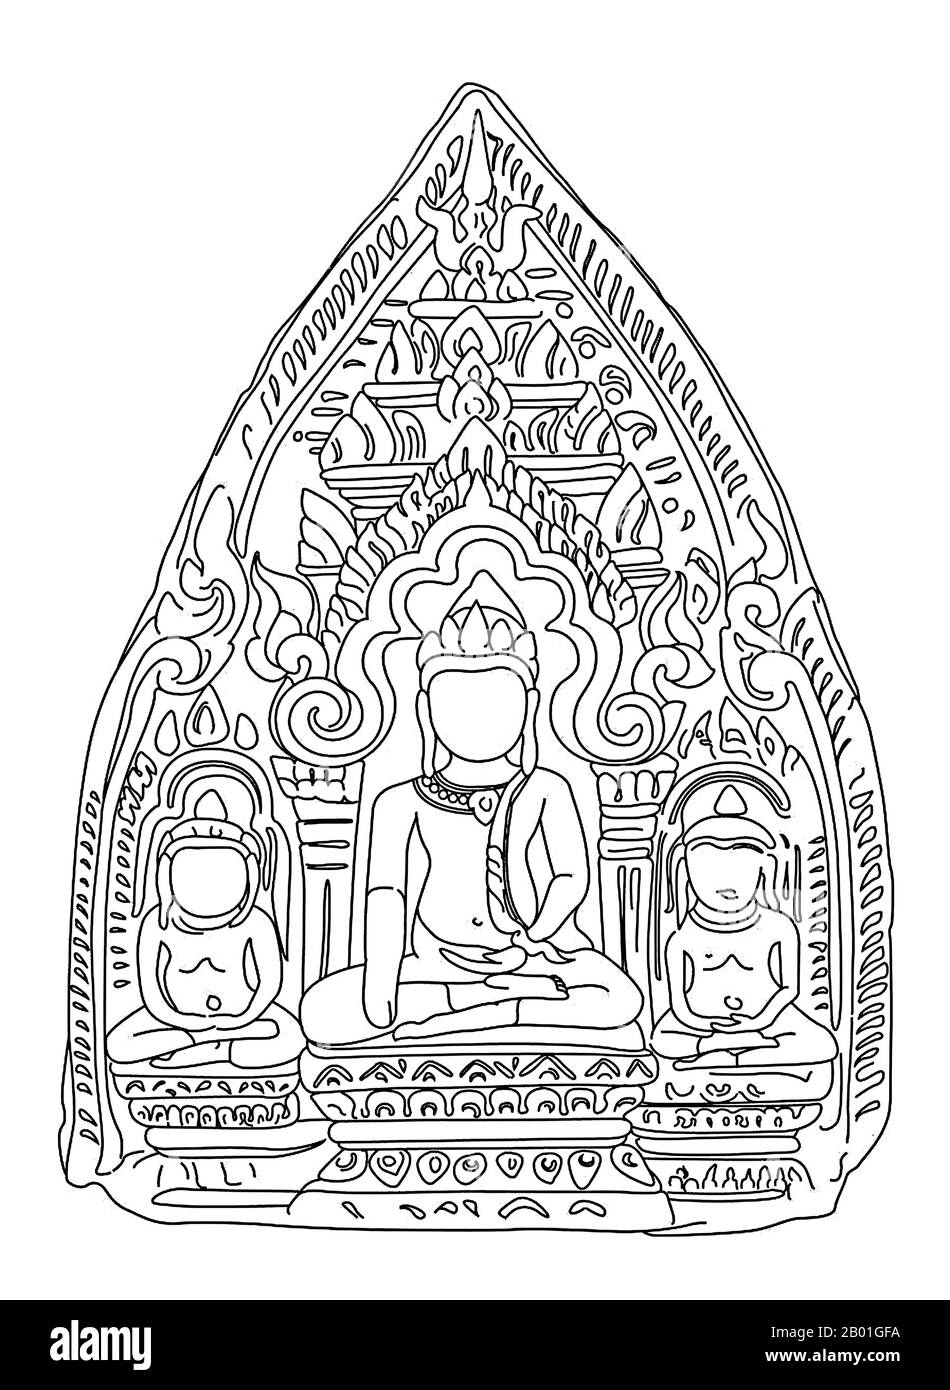 Thaïlande: Dessin de ligne de Buddha amulet ou 'Phra PIM', Wiang Tha Kan, province de Chiang Mai, période LAN Na, 12th-14th siècles ce. Wiang Tha Khan, situé à 16 km au sud de Chiang Mai dans le district rural de Sanpatong, est un petit et prospère village du nord de la Thaïlande, situé au milieu des plantations de Lamyai et habité par Tai Yong réaménagé de l'État voisin de Shan en Birmanie au début du 19th siècle. Il y a encore 10th ans ce fut une ville fortifiée, ou « wiang », servant de bastion à la périphérie du Royaume mon de Haripunchai, le Lamphun d’aujourd’hui. Banque D'Images